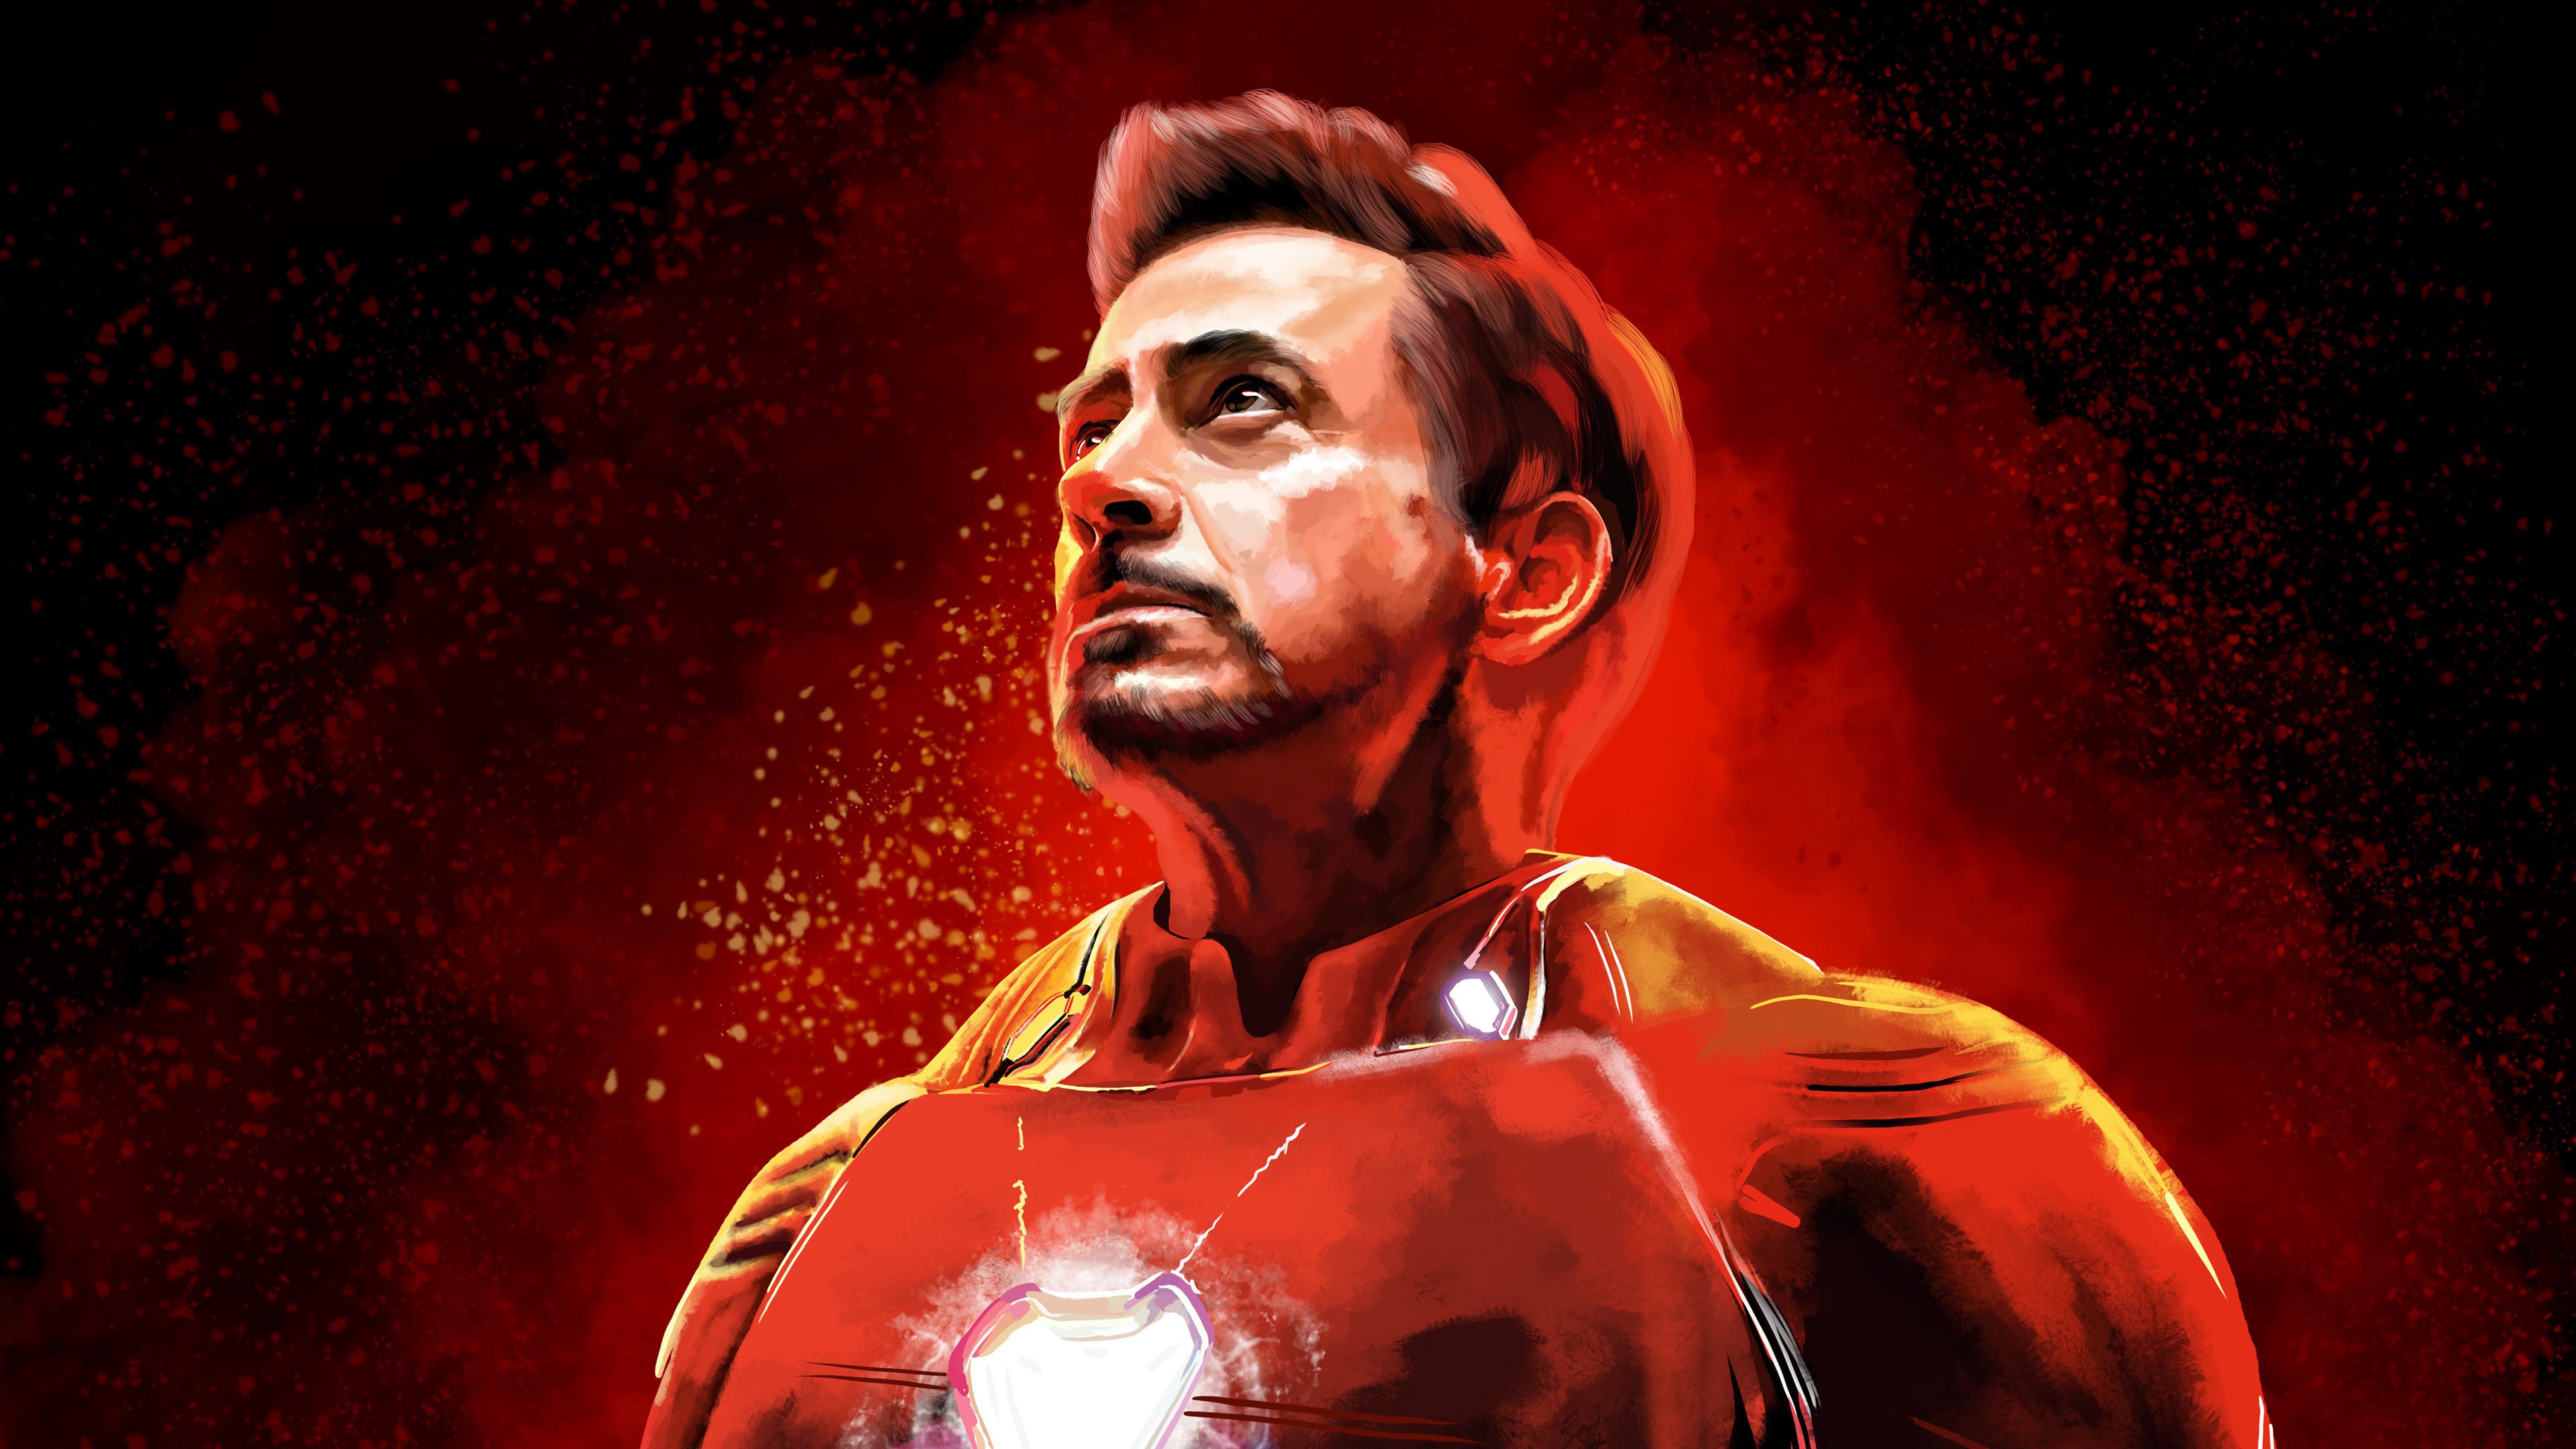 Wallpaper Robert Downey Jr as Iron Man Fanart